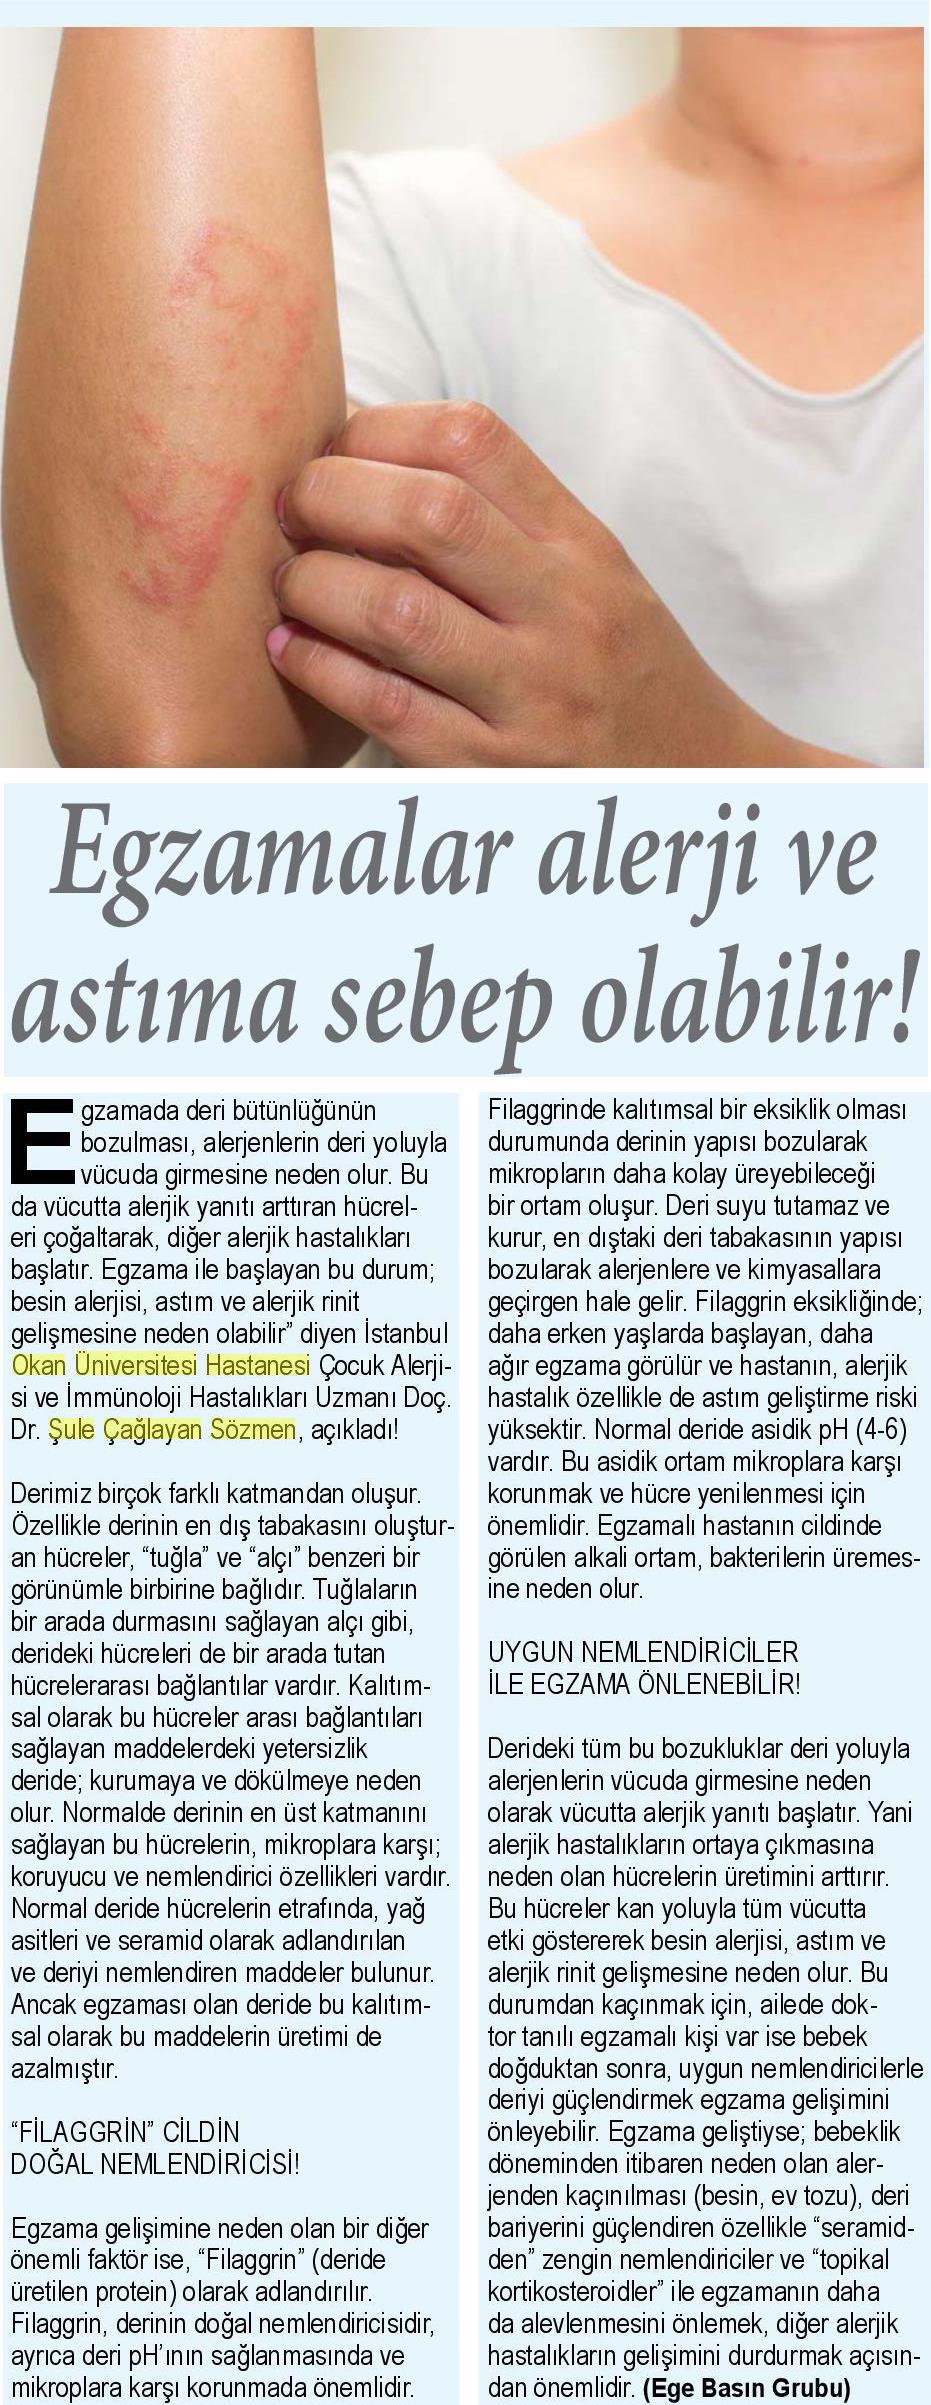 02.03.2019	Sağlık Gazetesi	EGZAMALAR ALERJİ VE ASTIMA SEBEP OLABİLİR!